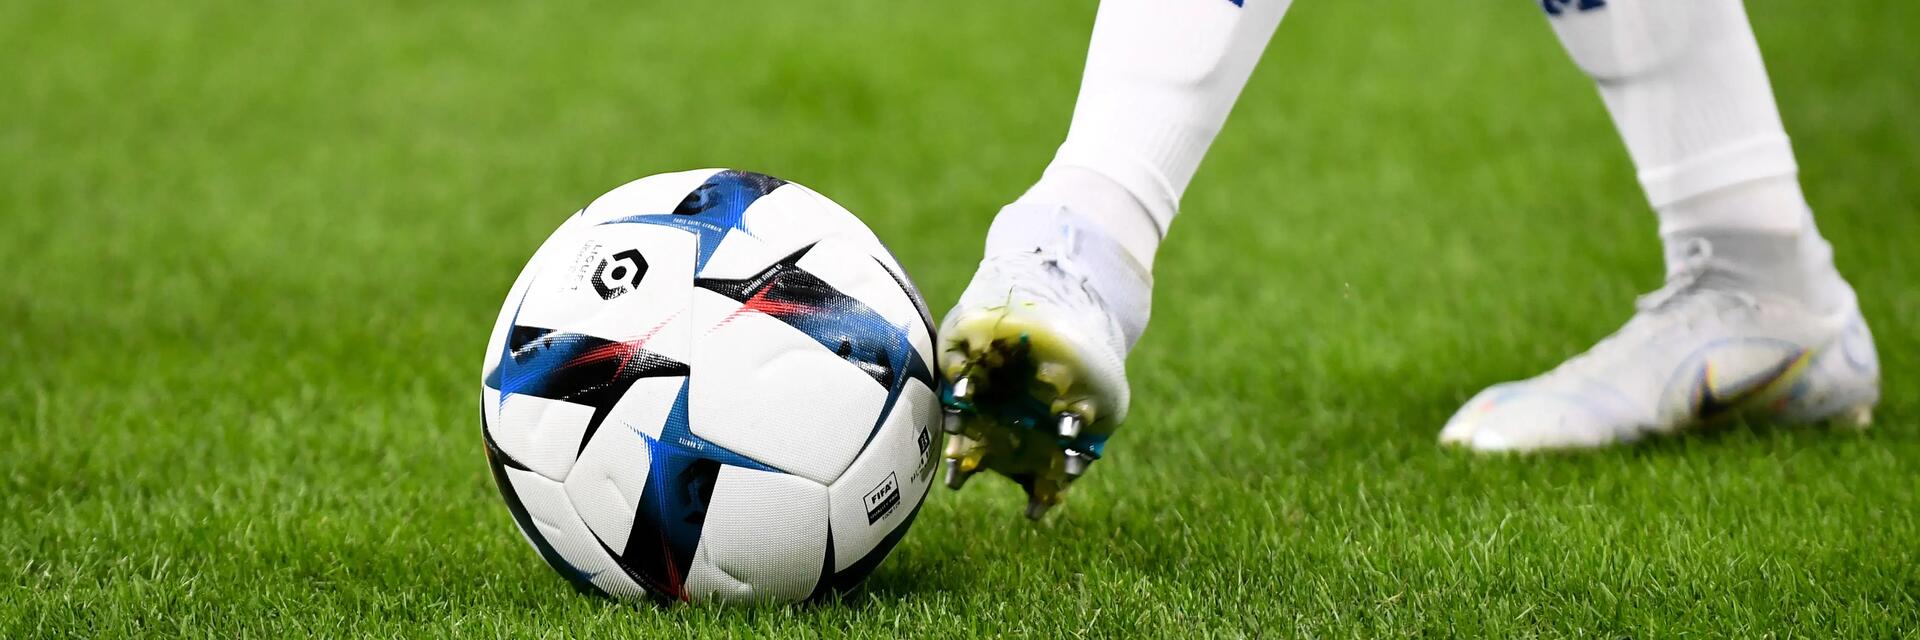 Piłkarz w korkach i getrach piłkarskich dotykający stopą piłki nożnej stojąc na murawie